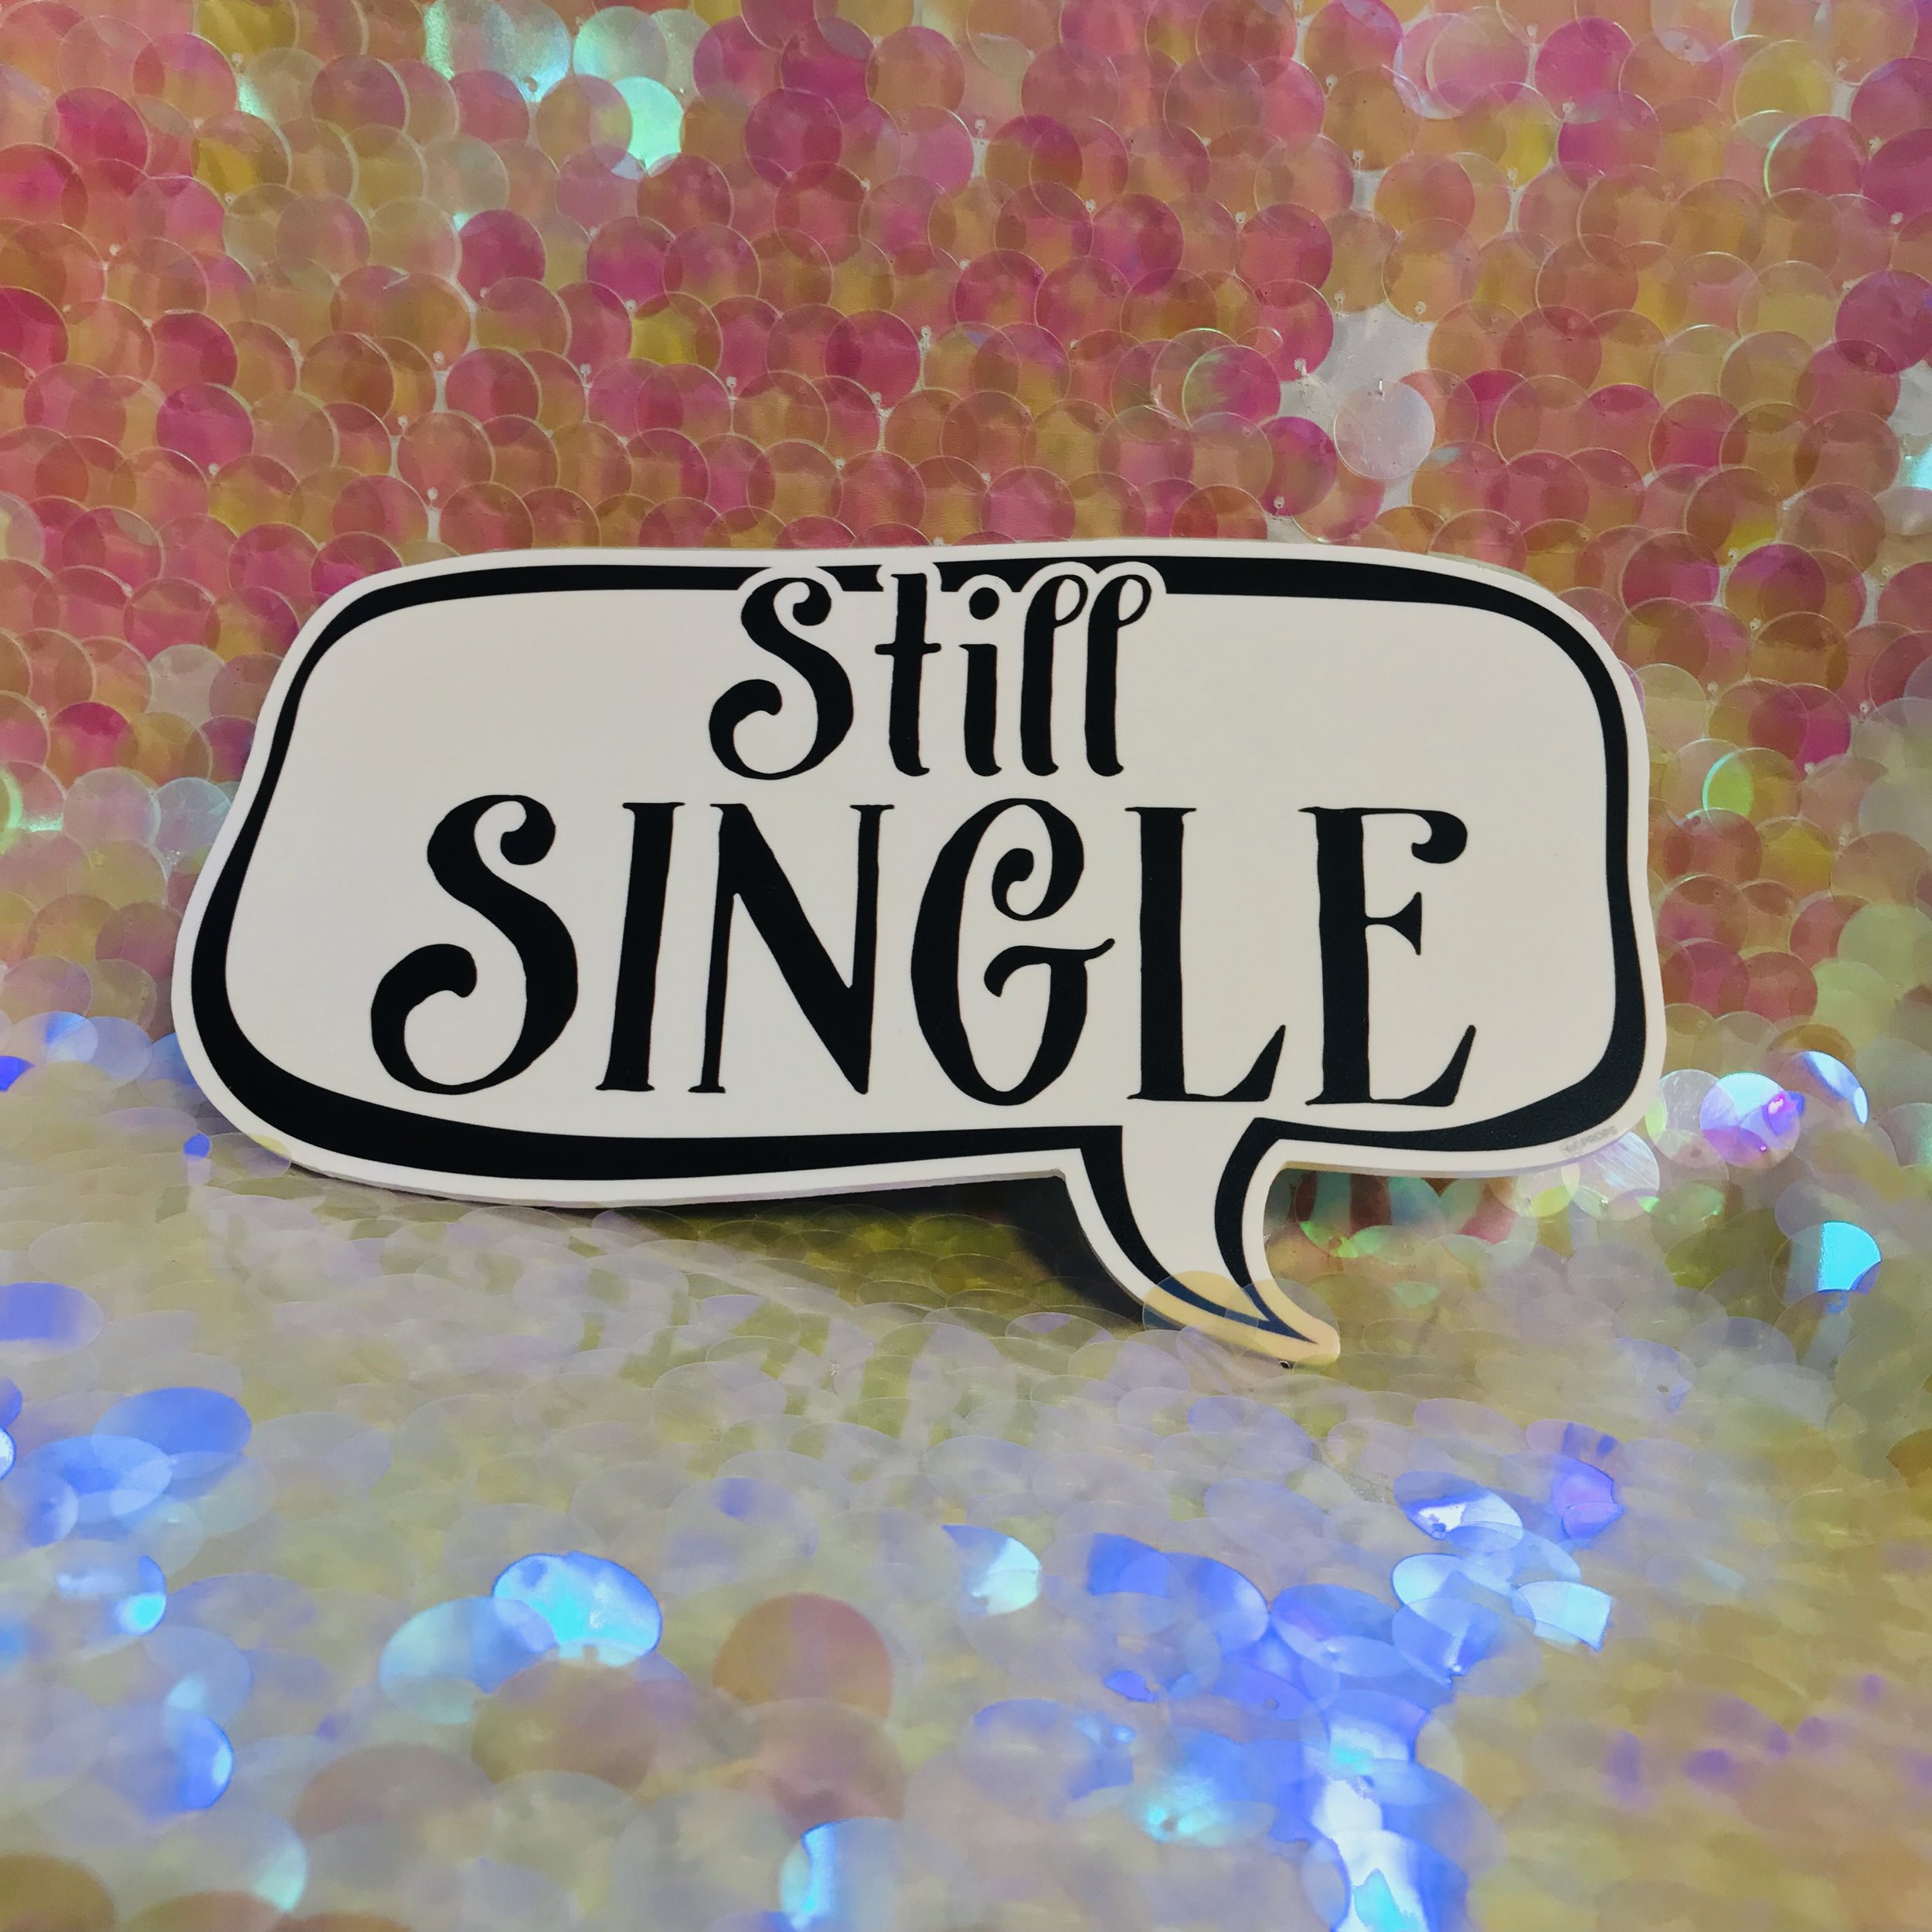 Still Single.jpg